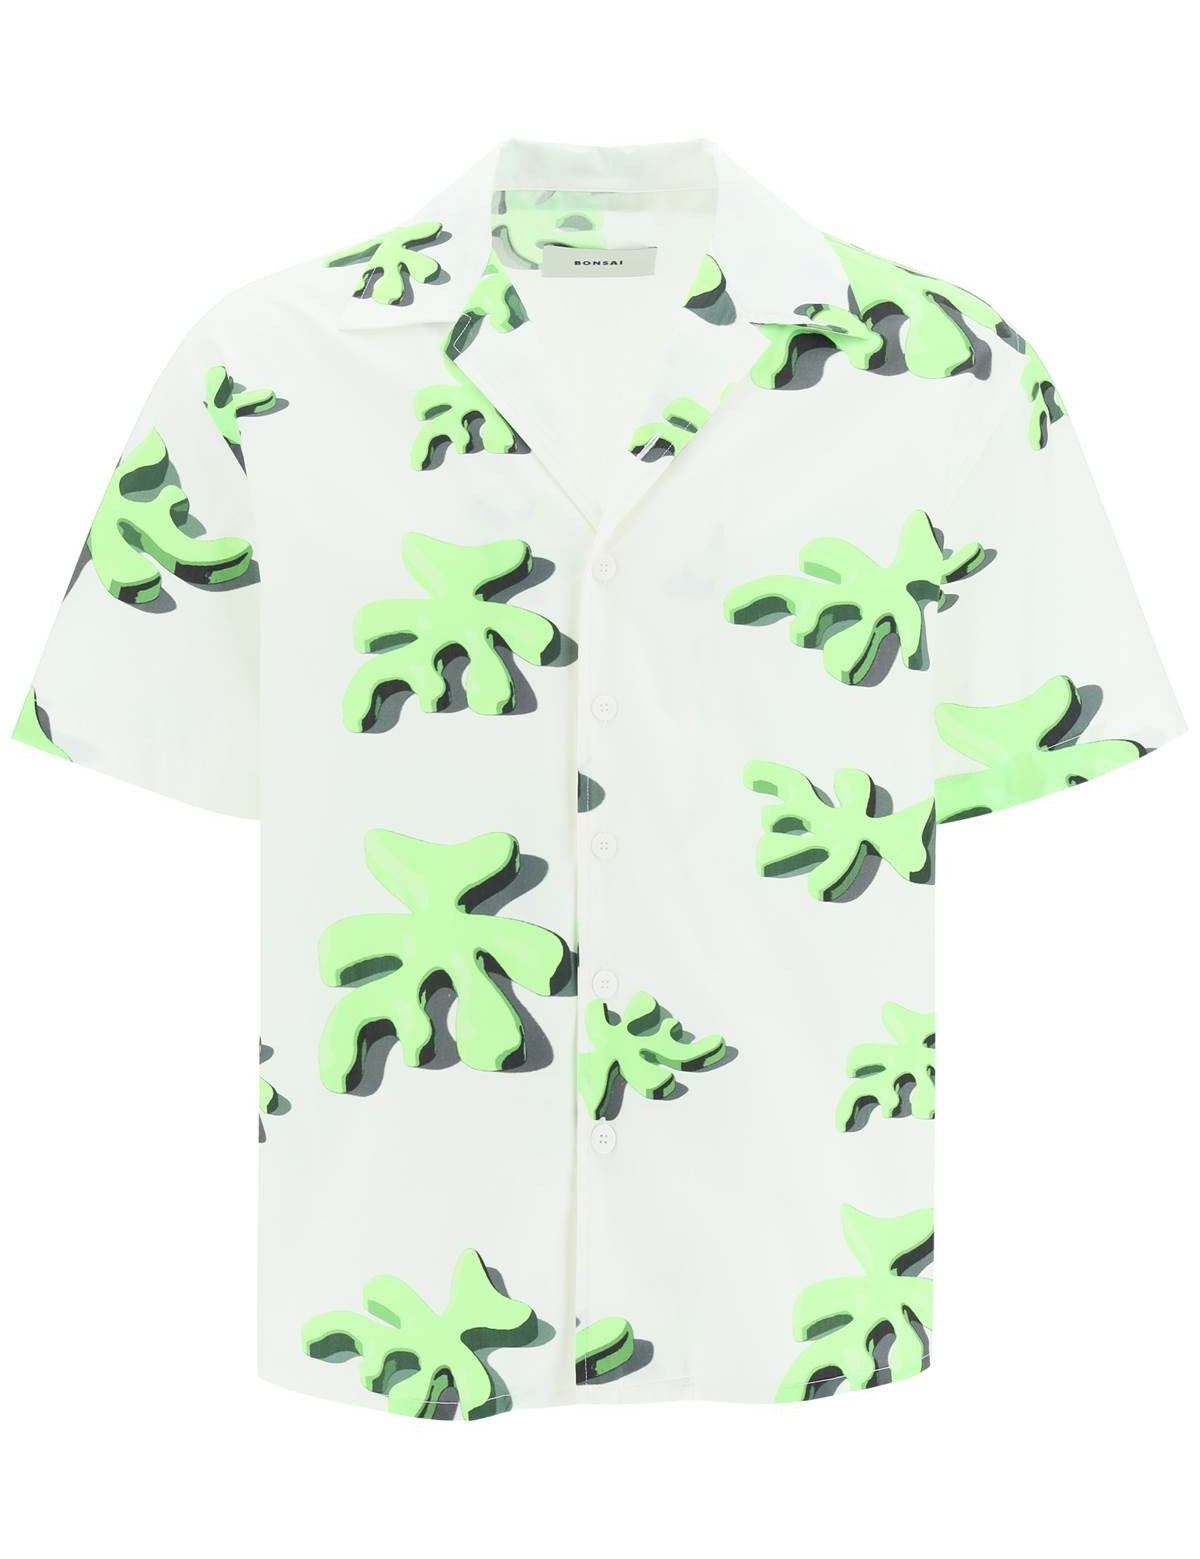 bonsai-alberello-bowling-shirt.jpg